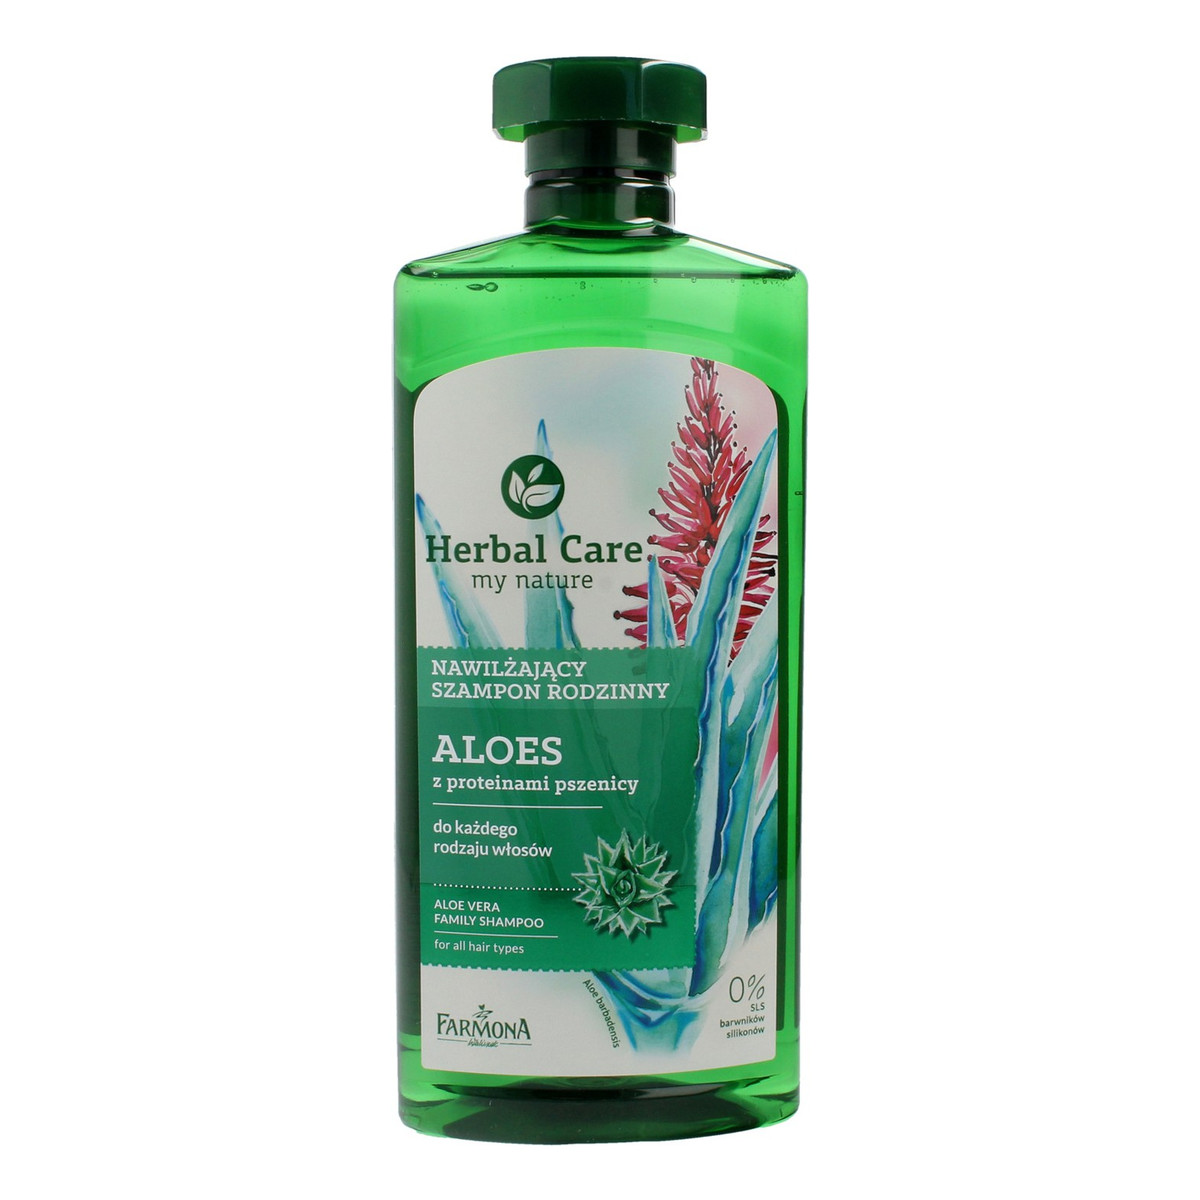 Farmona Herbal Care nawilżający szampon rodzinny Aloes do każdego rodzaju włosów 500ml